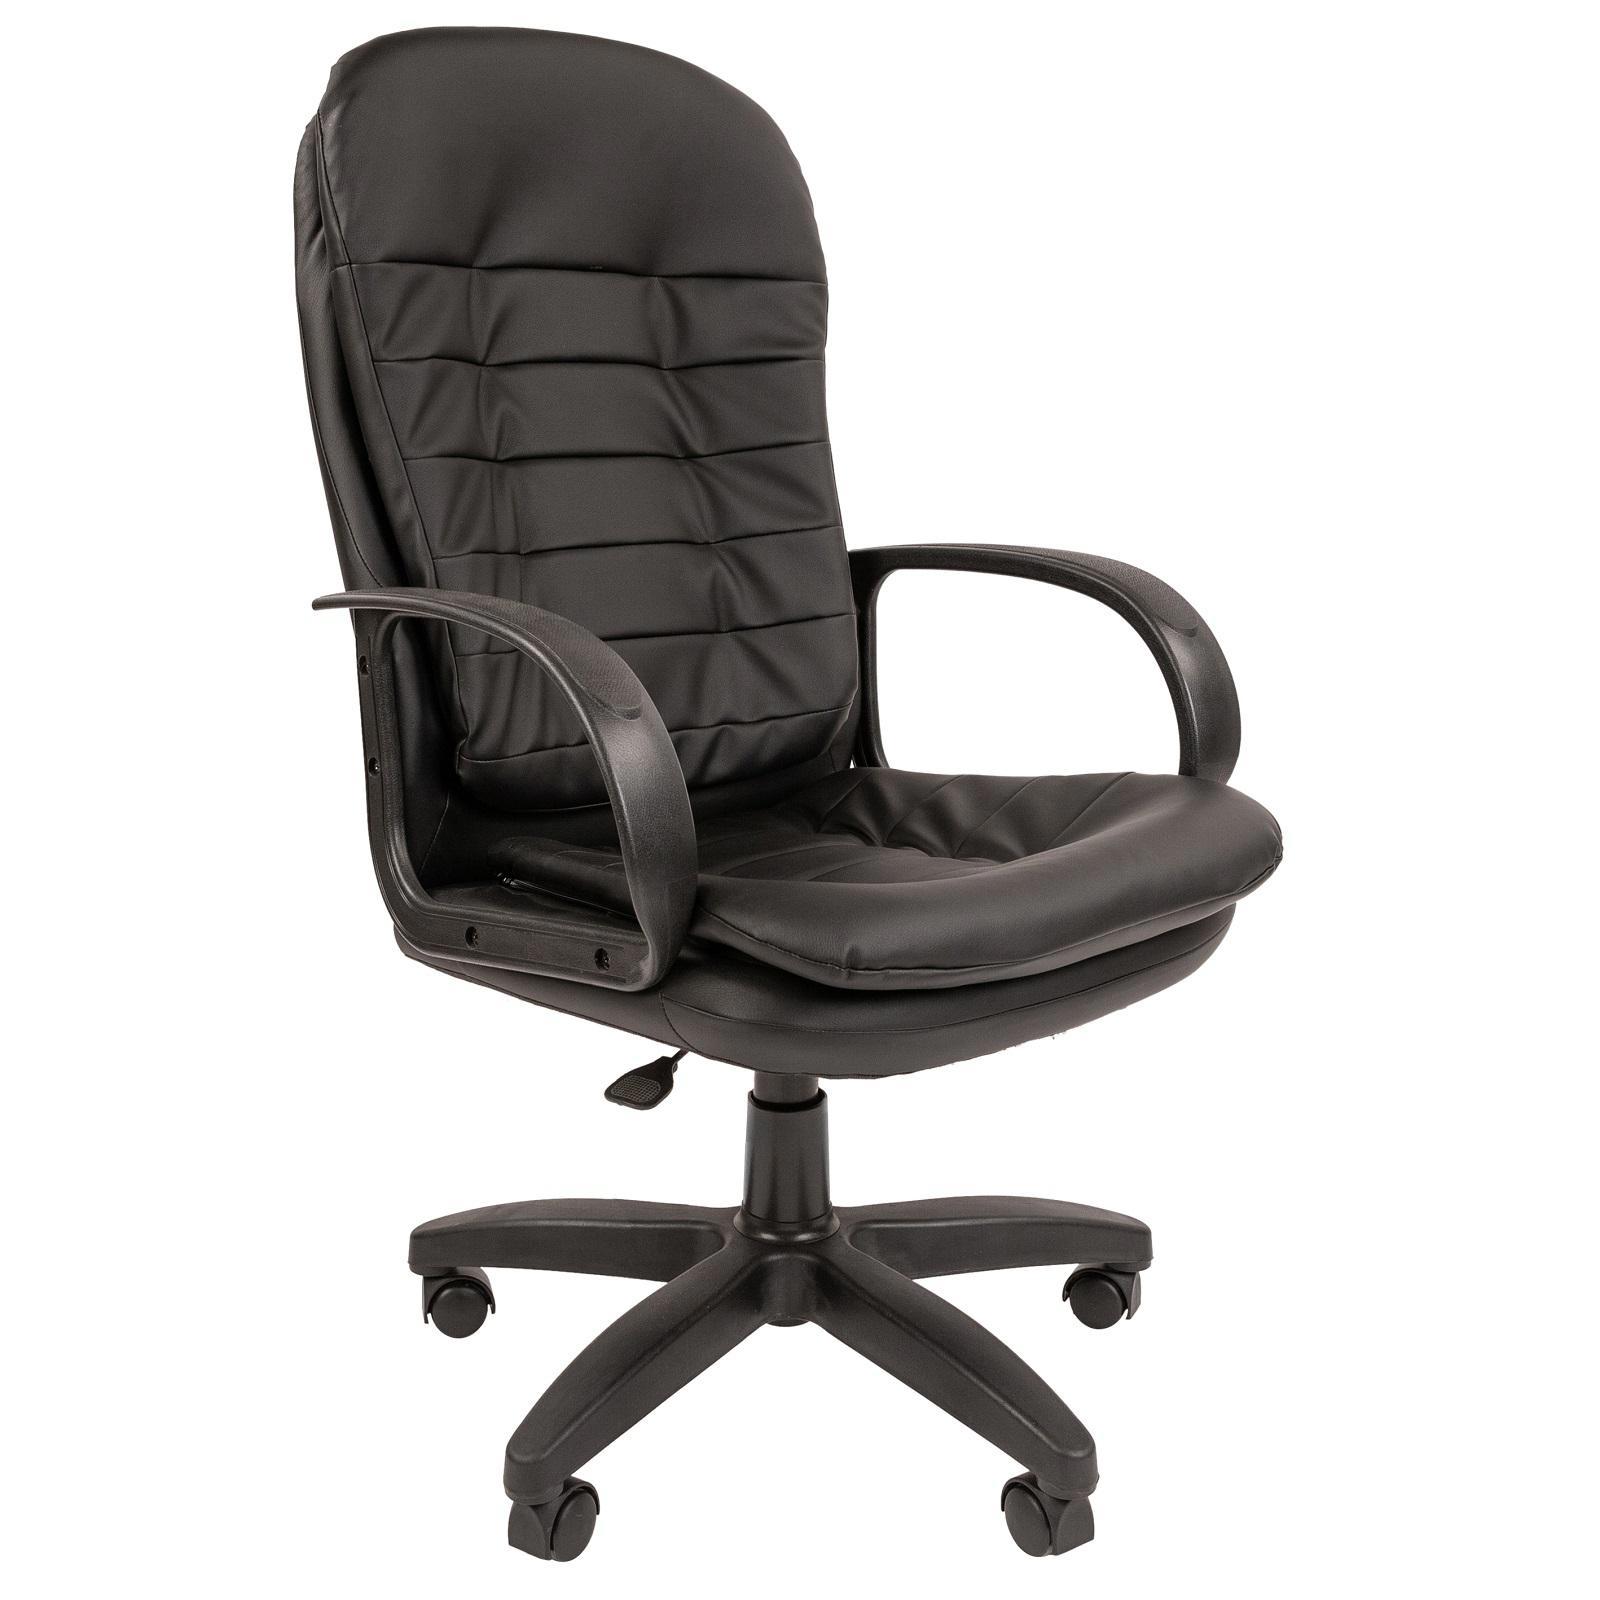 90489171 Офисное кресло Ст-95 экокожа цвет черный STLM-0248871 СТАНДАРТ